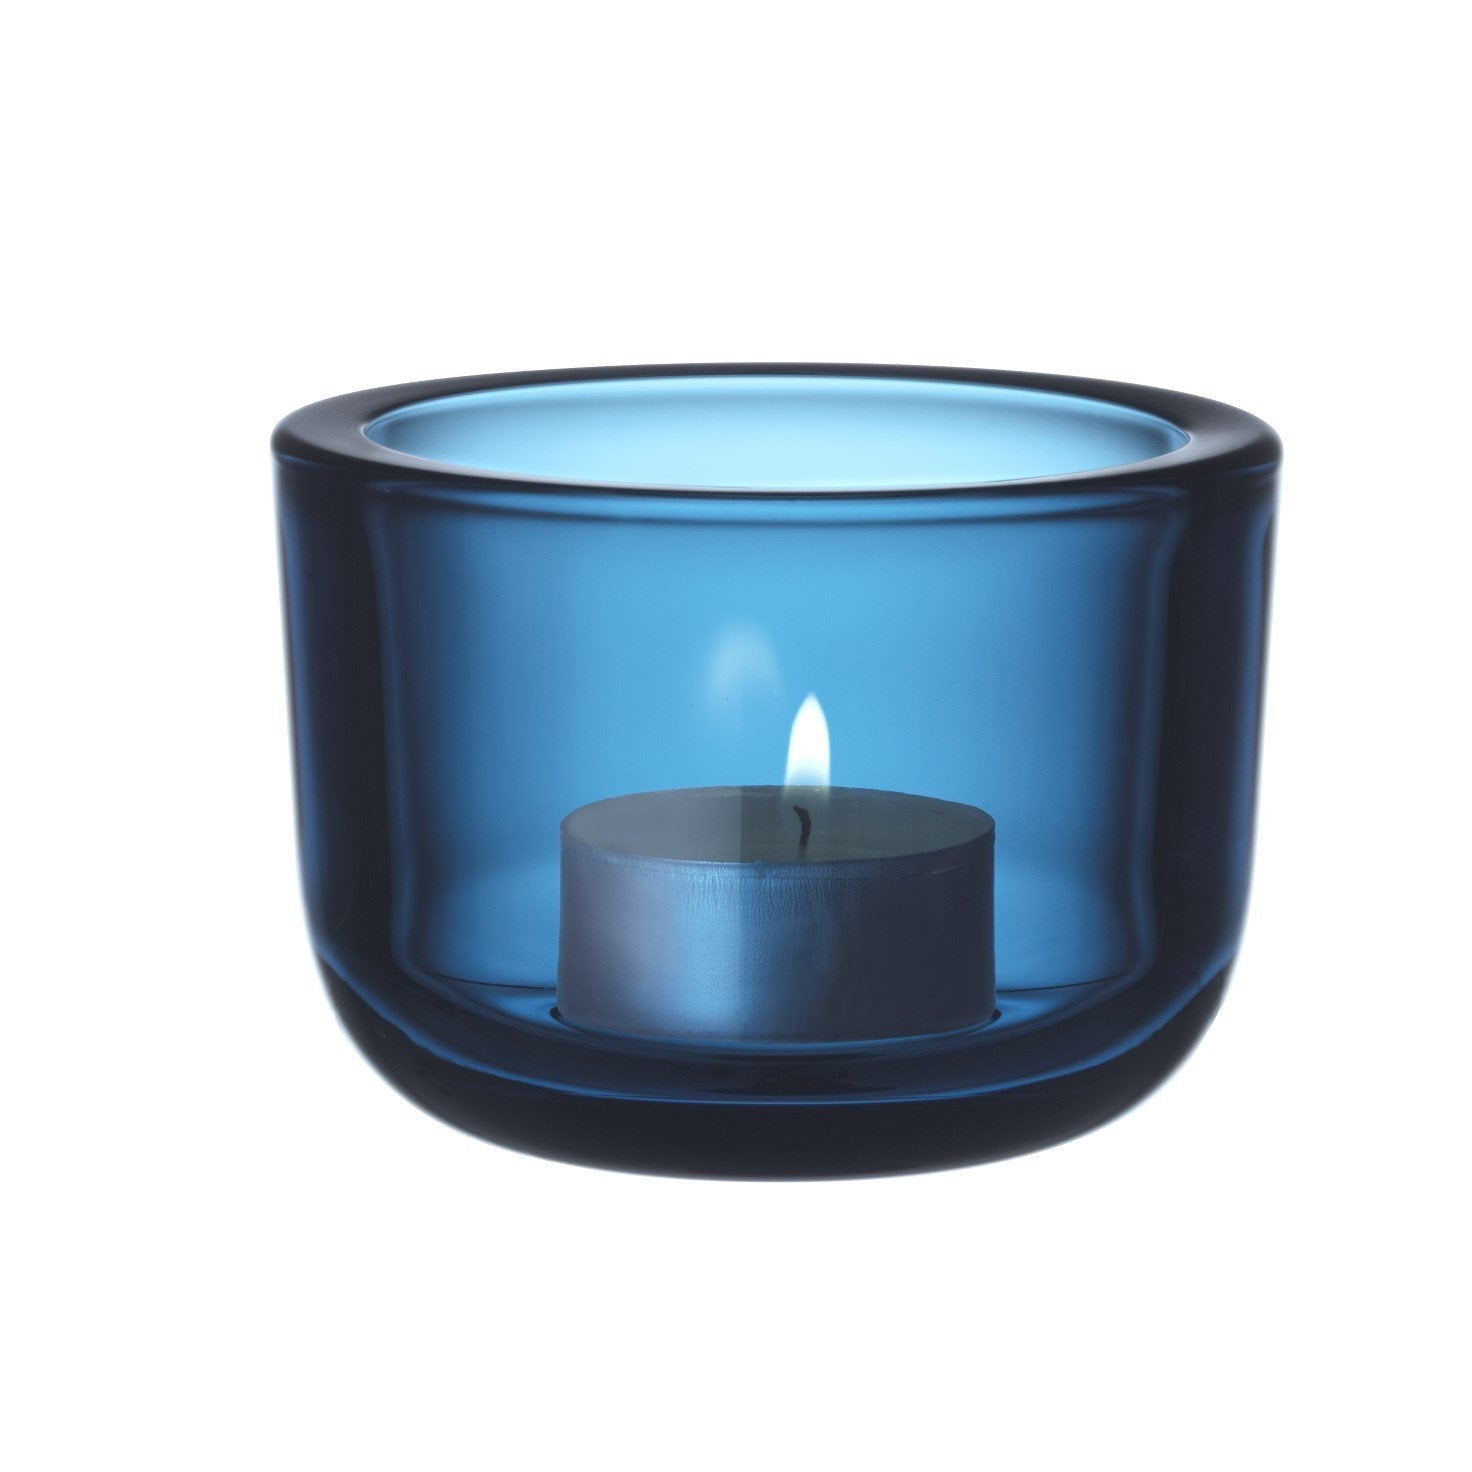 Iittala Valkea Lantern Turquoise, 6 cm